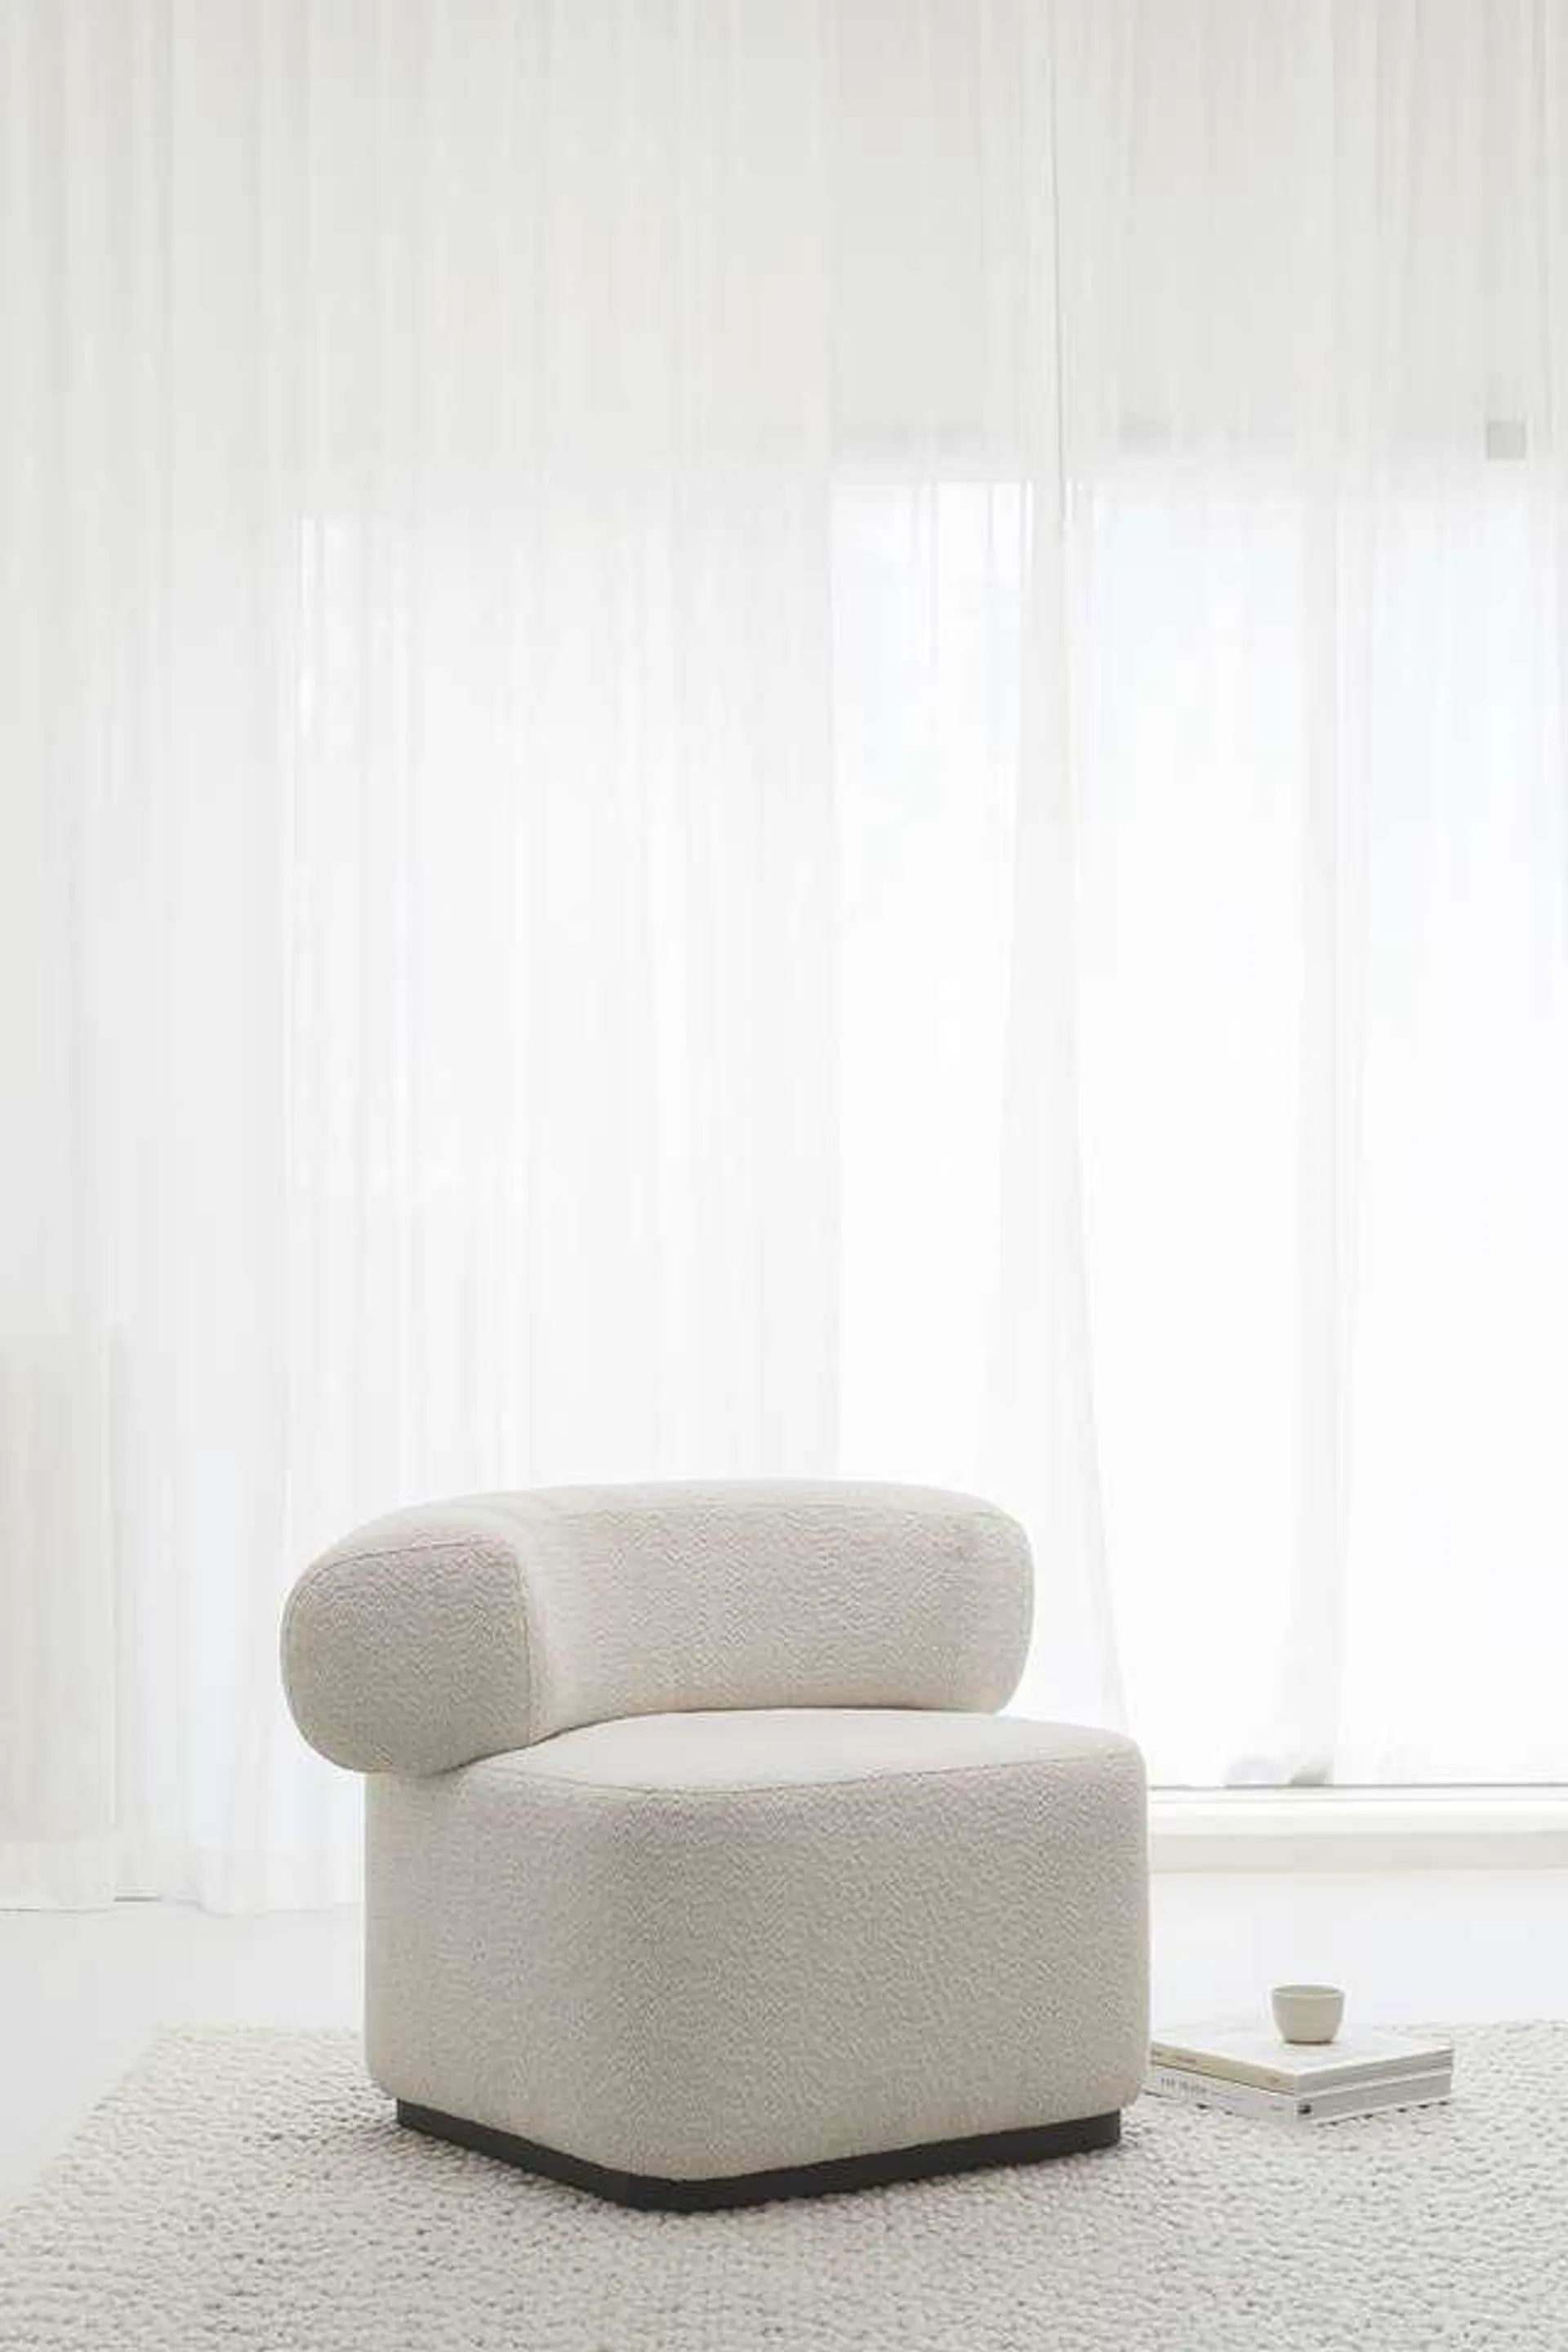 Studio HENK fauteuil Luna lounge chair